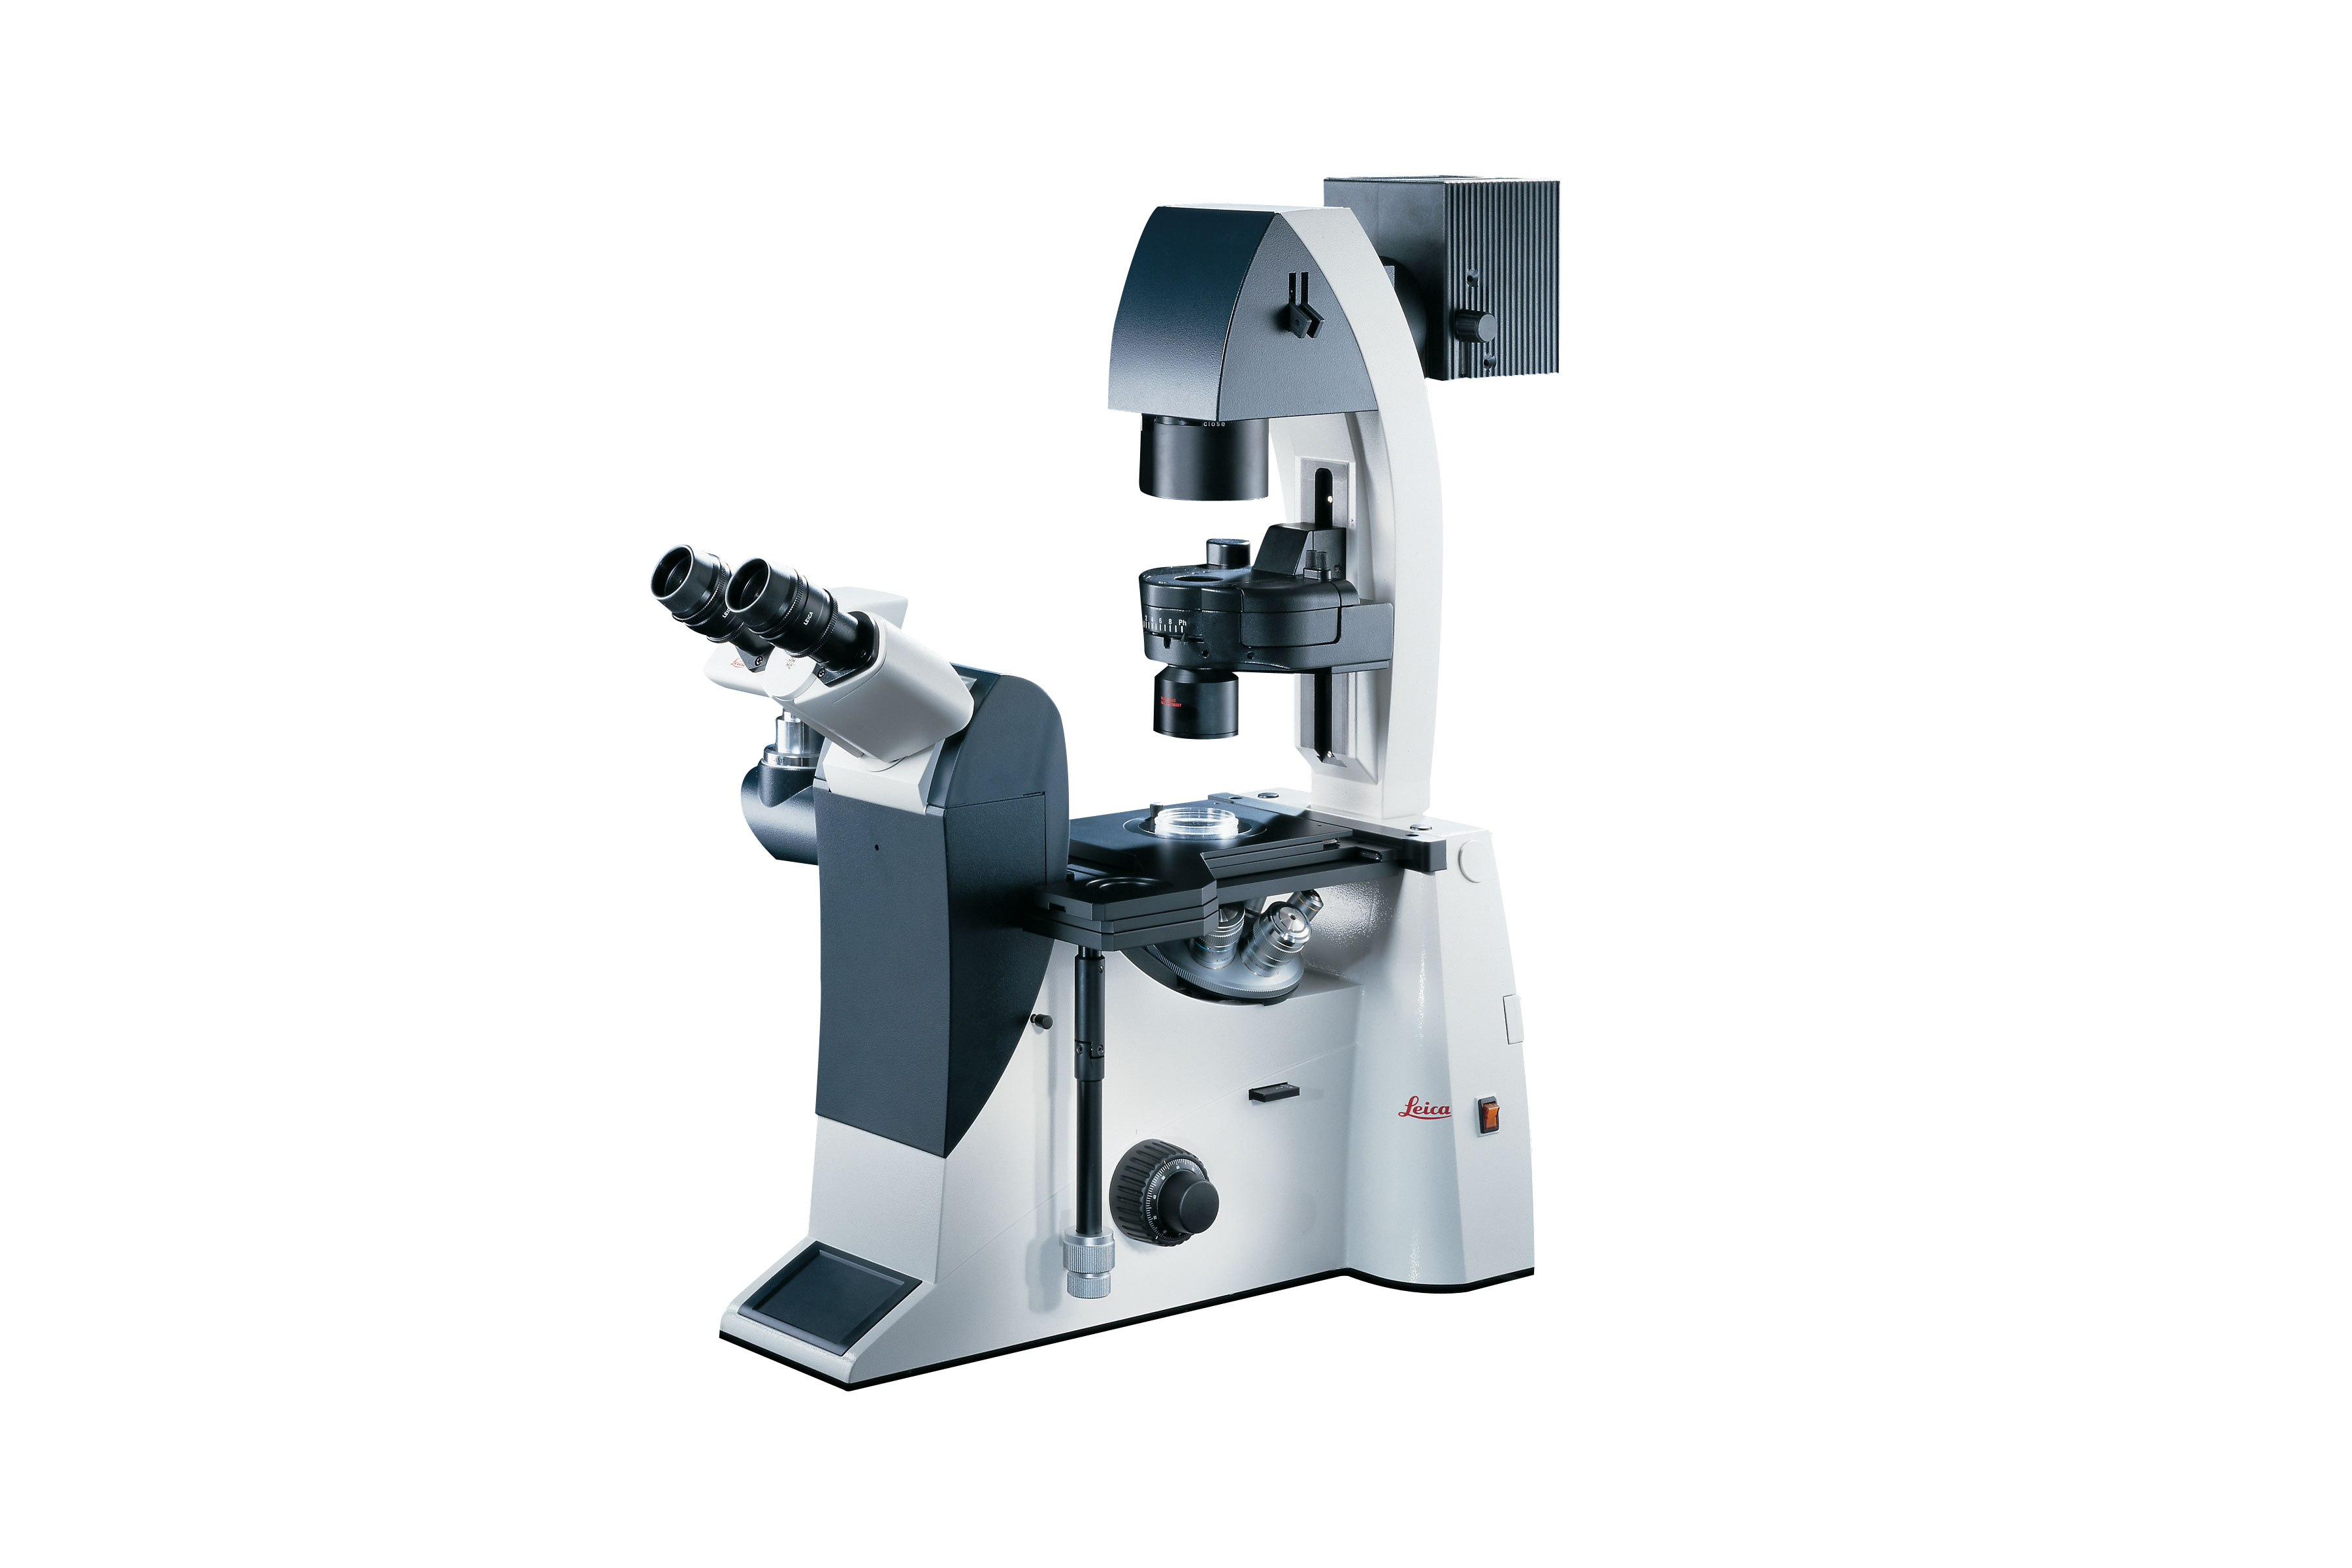 Das Leica DMI3000 B ist das erste Forschungsmikroskop mit einem direktem Zugang zu einer konjugierten Fokusebene (Zwischenpupille). Hier können verschiedene Kontrastier-Techniken außerhalb des Objektivs adaptiert werden.